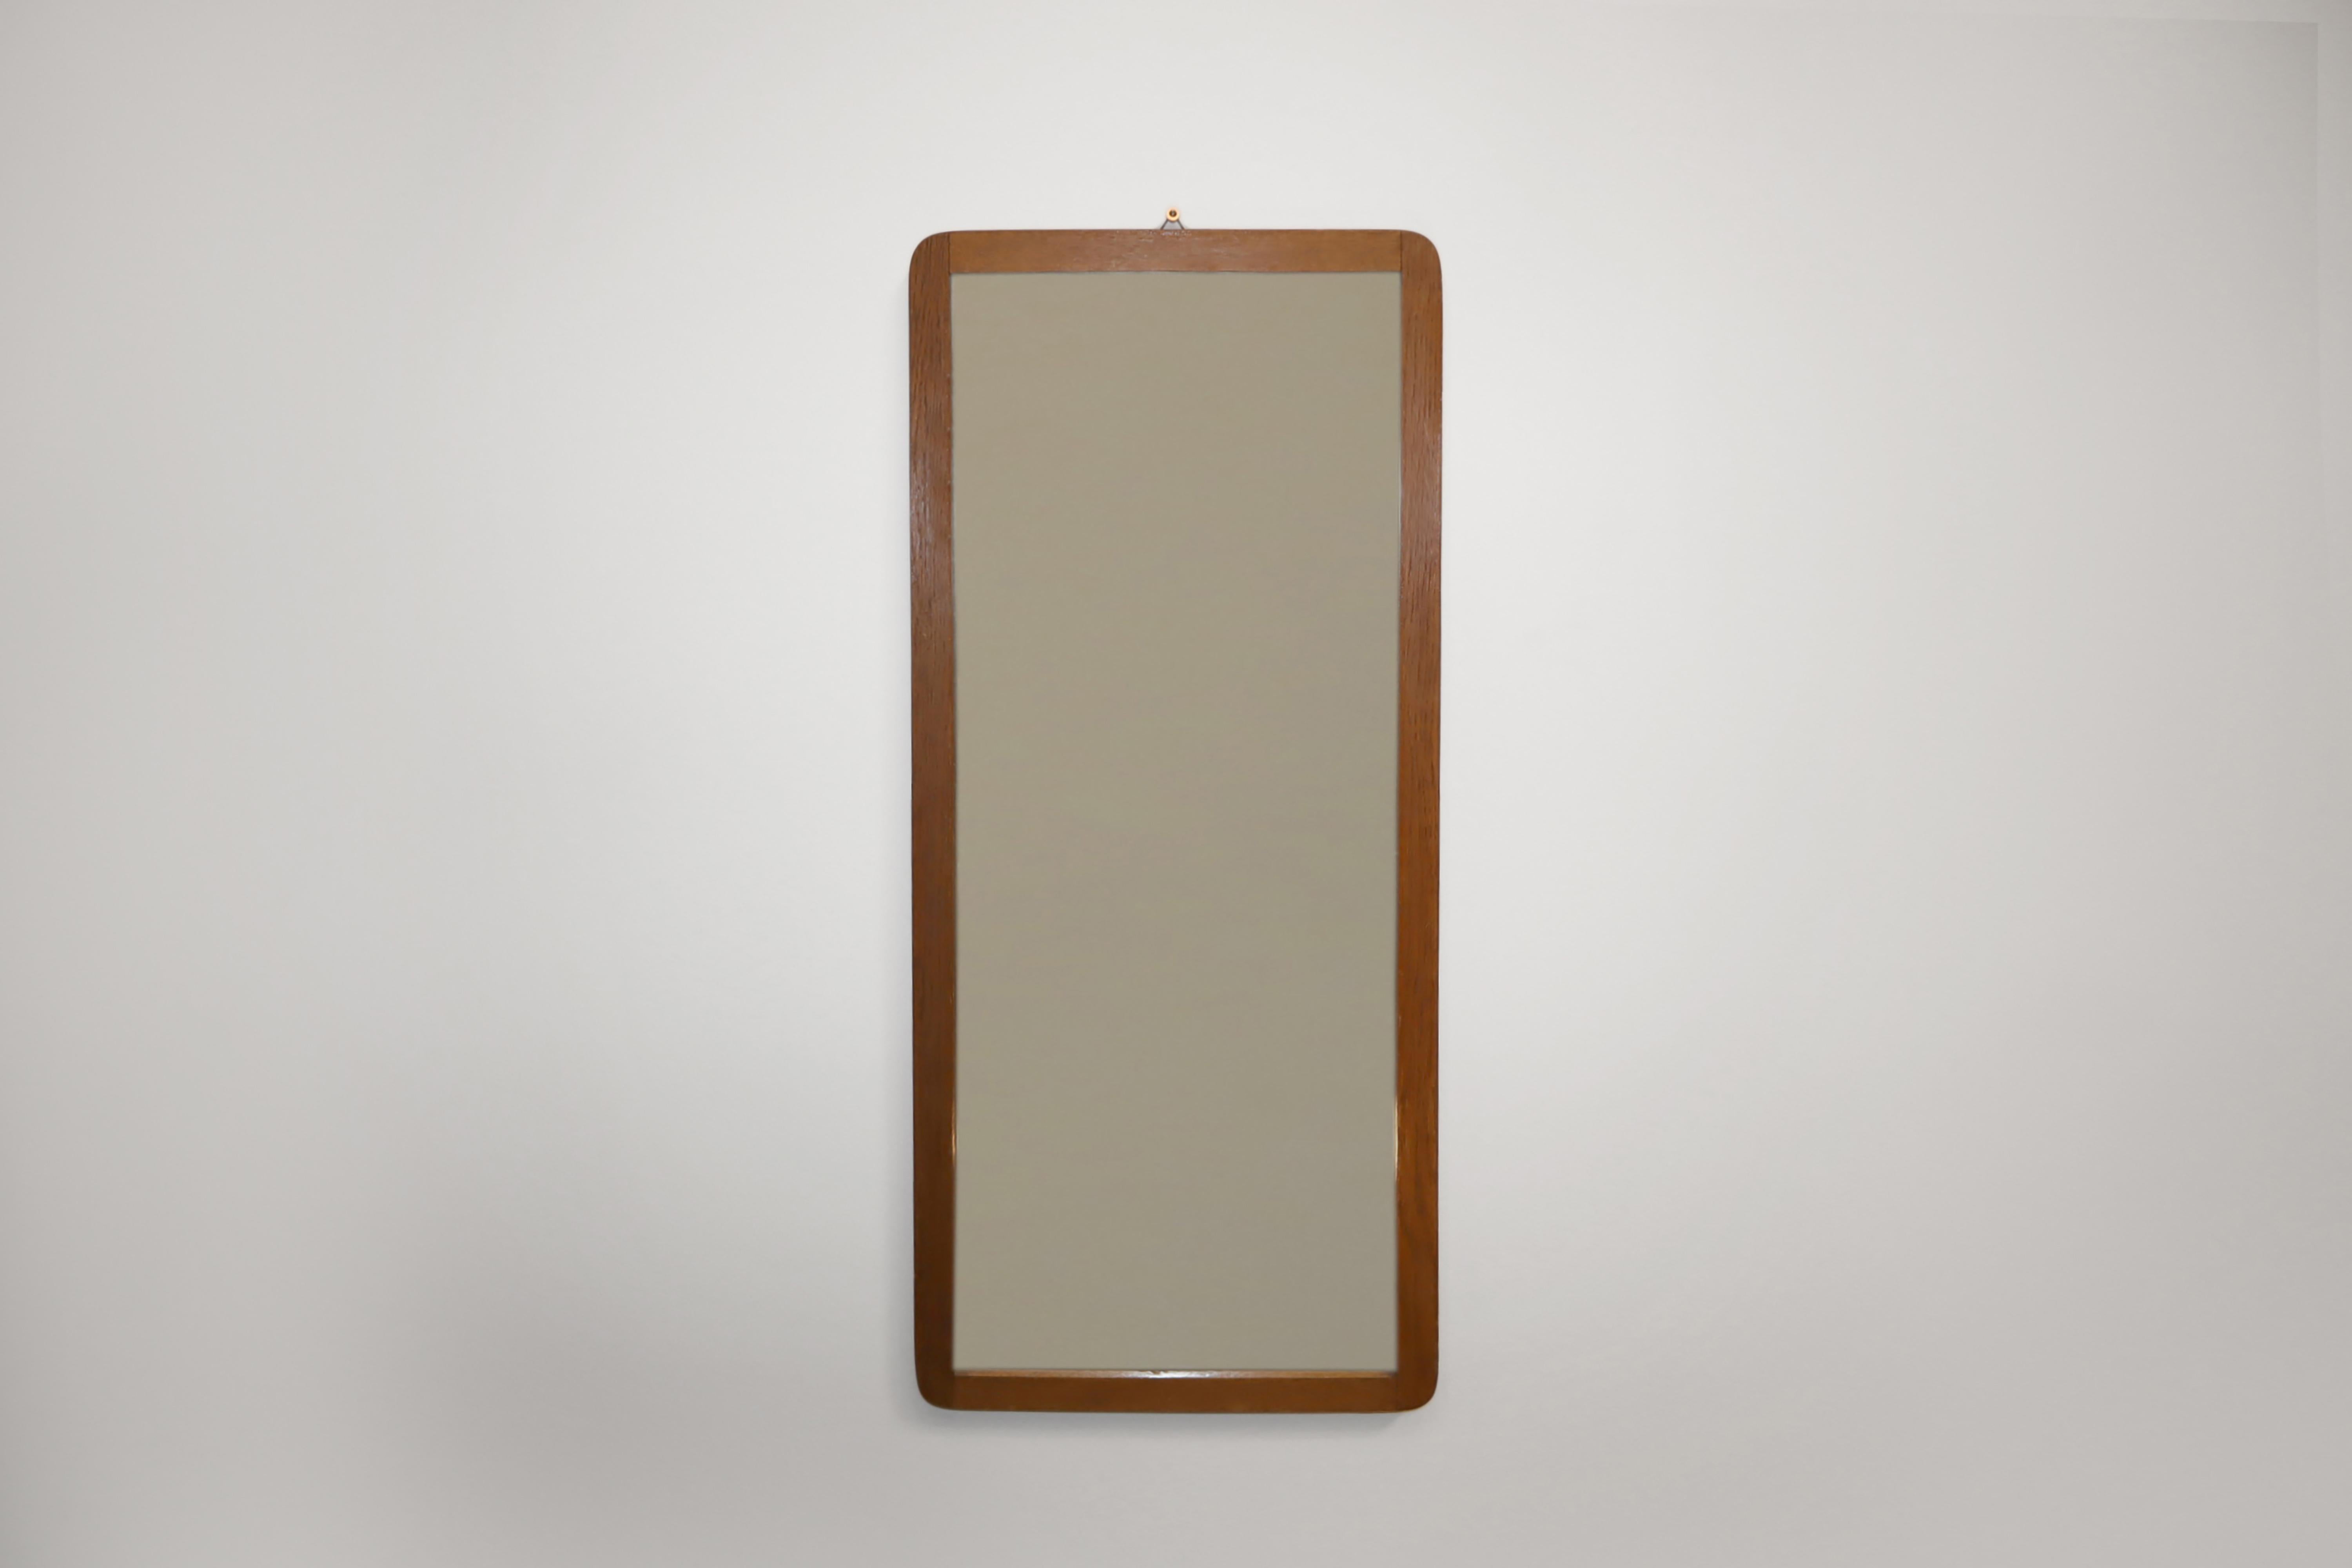 Miroir suspendu en bois dur, probablement en teck, The Modern Scandinavian Mid-Century Modern. Fabriqué au Danemark dans les années 1960.

Ce miroir est fabriqué en bois. Il est de forme rectangulaire avec des coins arrondis et de jolis joints à